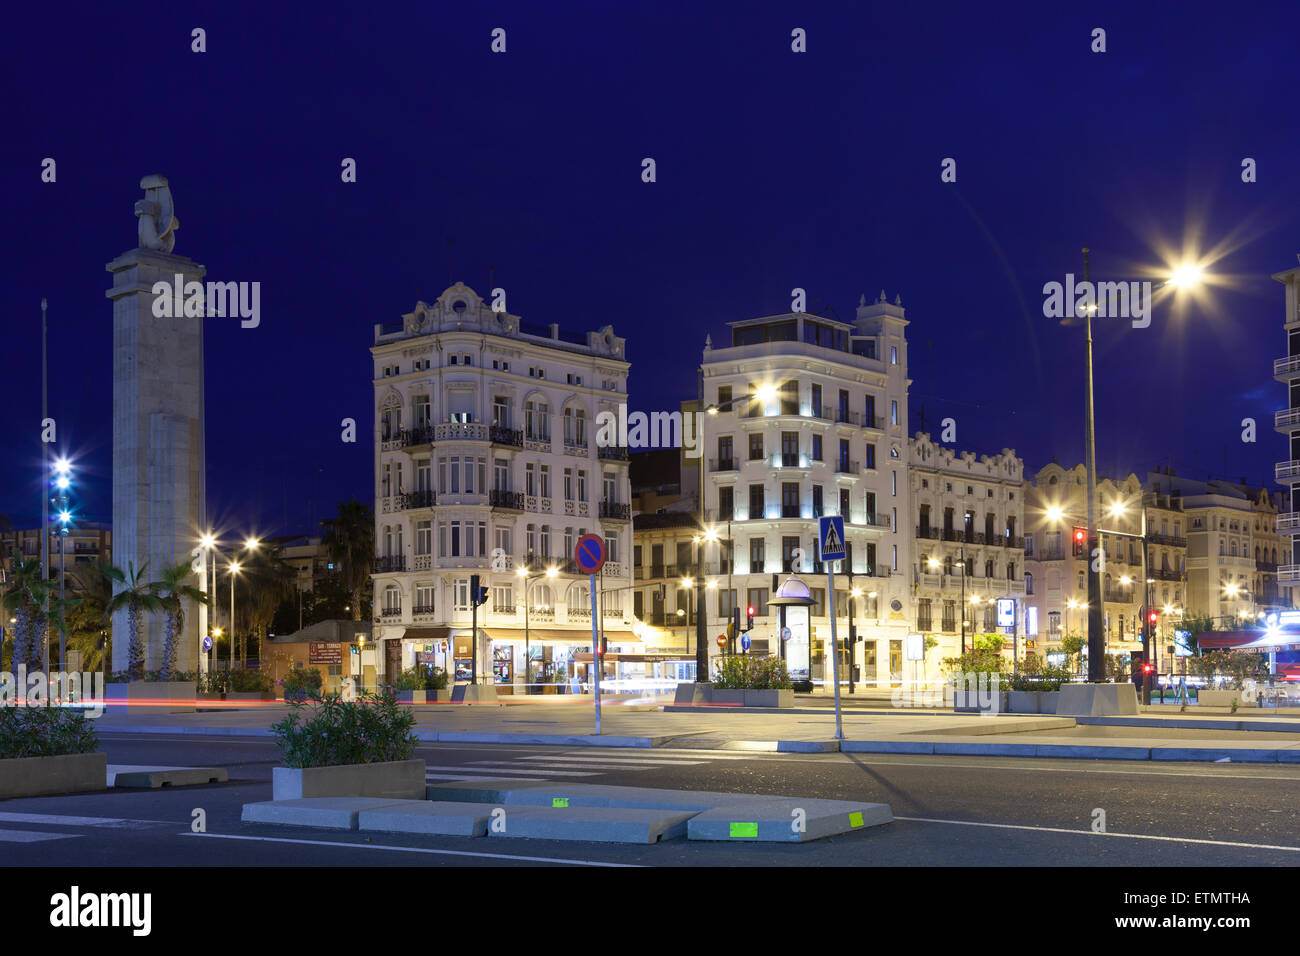 City street Avinguda de Manuel Soto illuminated at night in Valencia, Spain Stock Photo